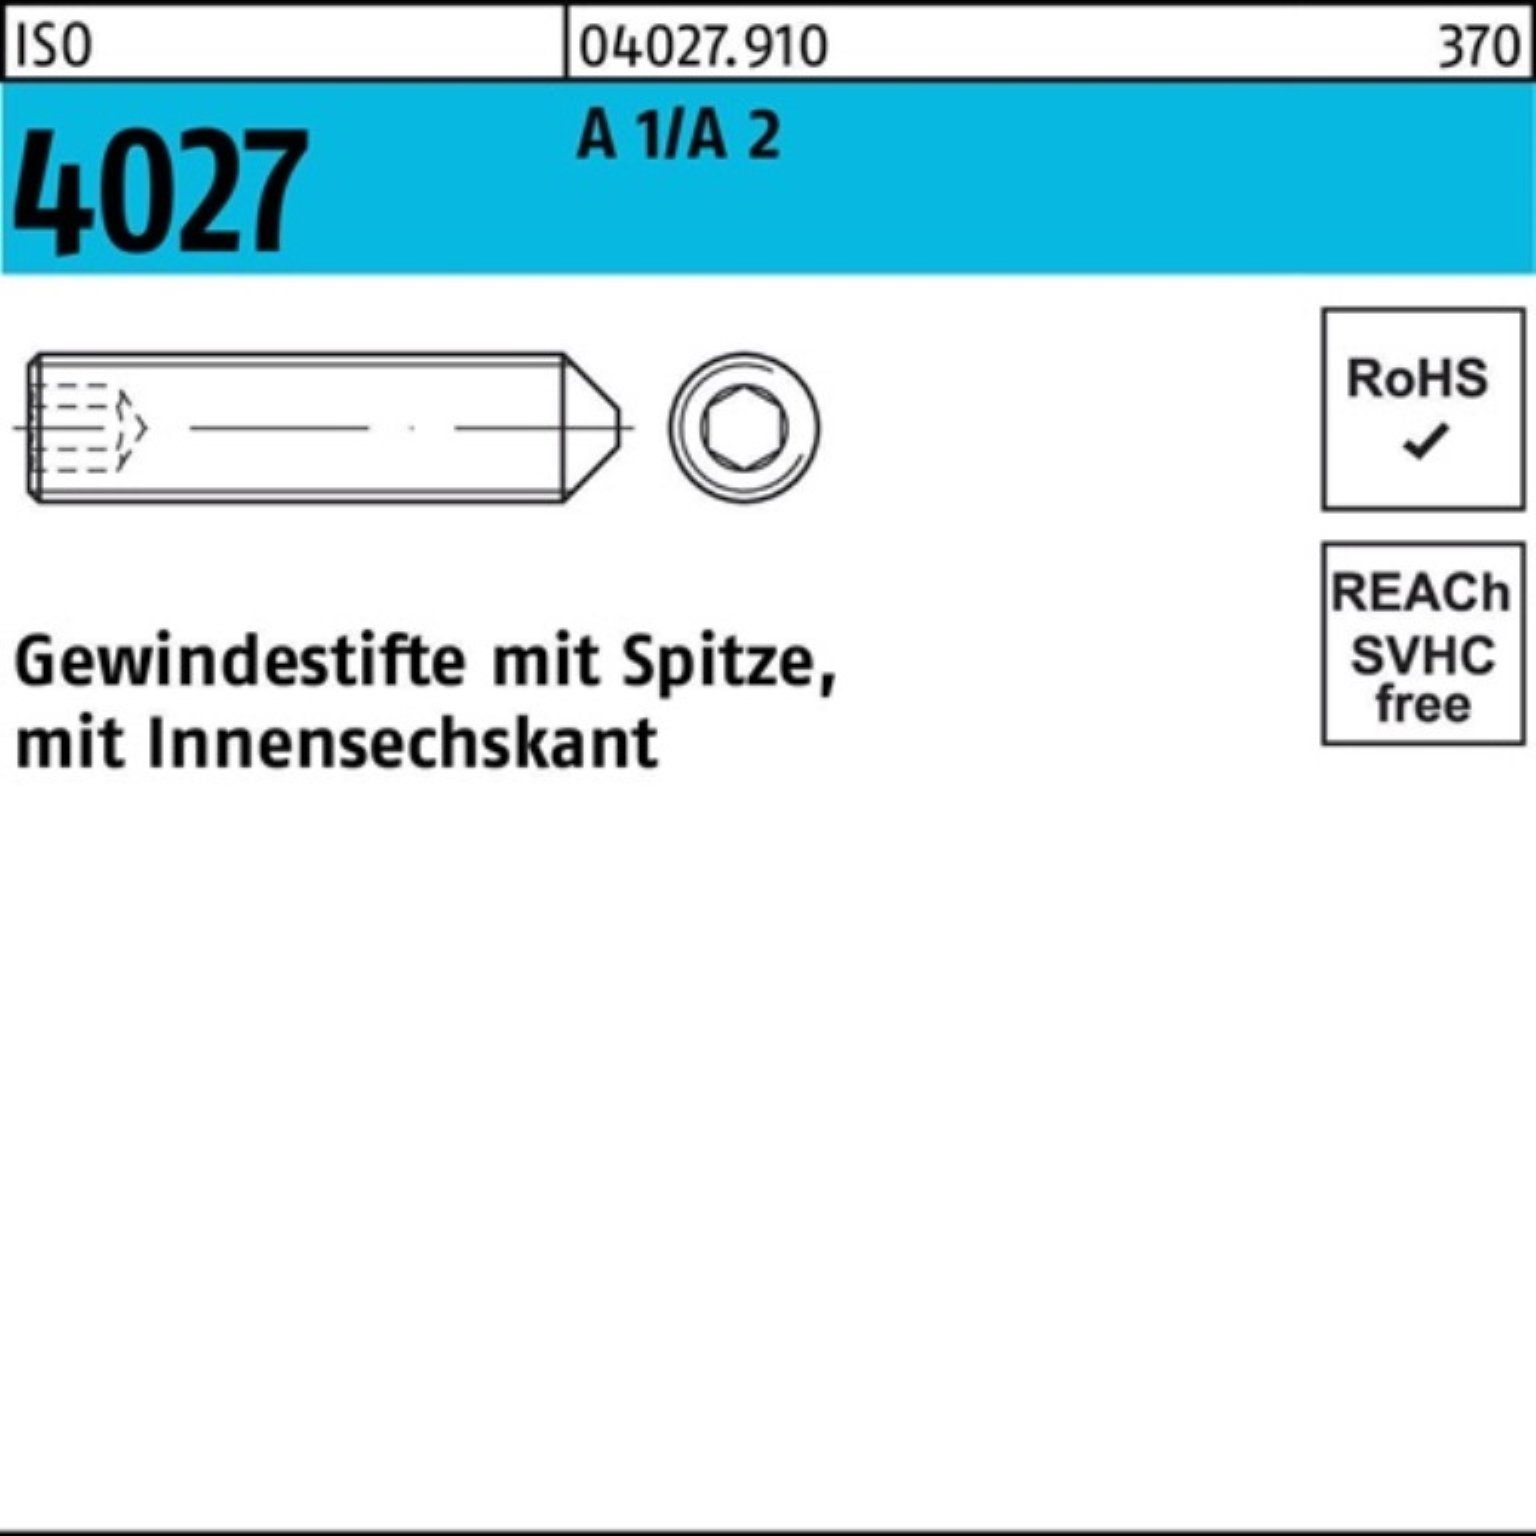 Reyher Gewindebolzen A Pack 4027 200 Gewindestift ISO Stüc Spitze/Innen-6kt 200er 35 M6x 2